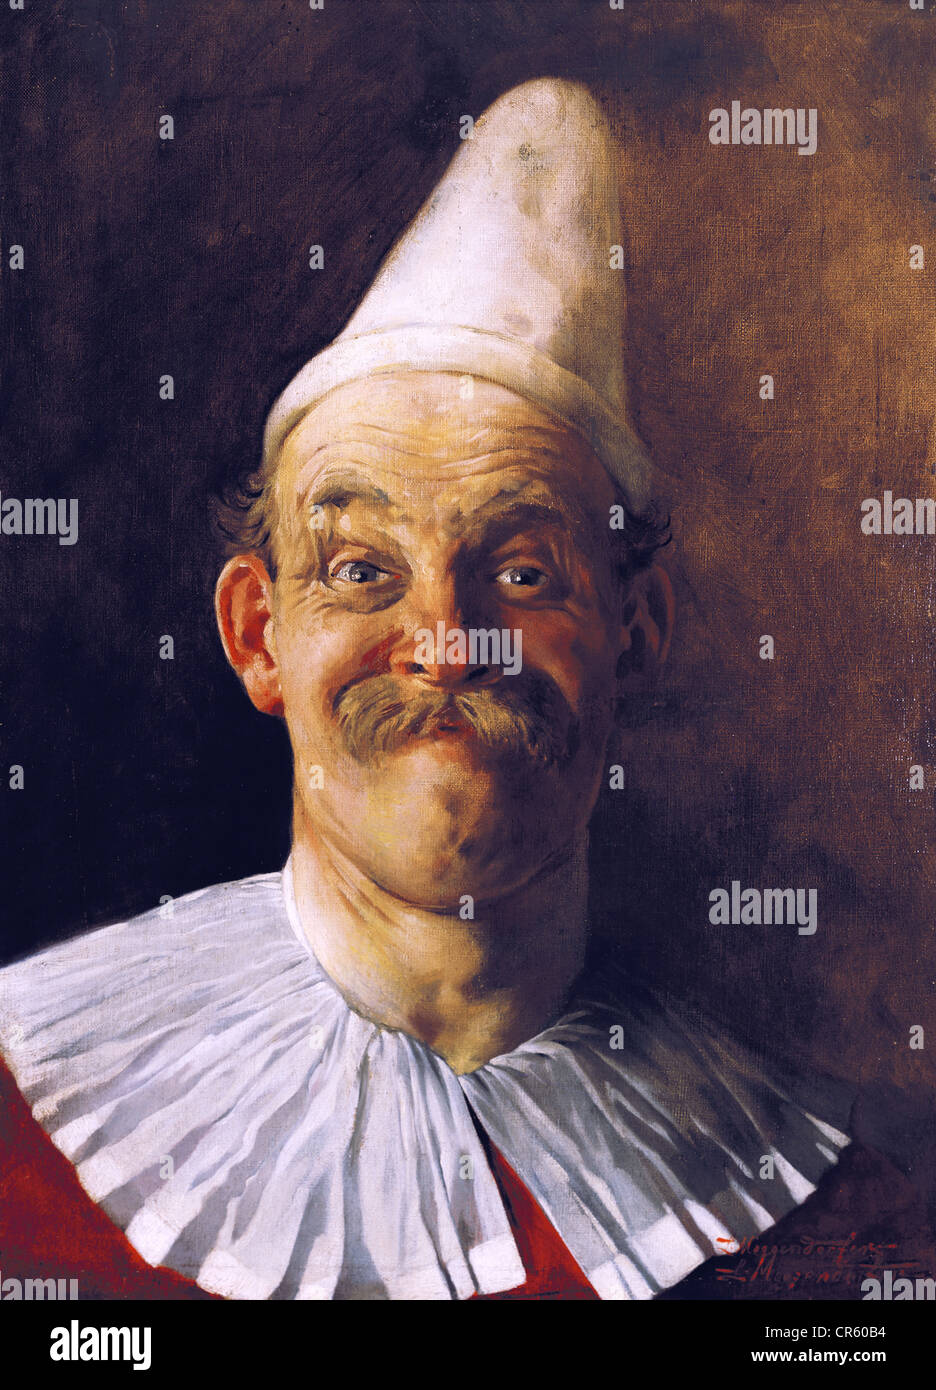 Megendorfer, Lothar, 6.11.1847 - 7.7.1925, peintre et illustrateur allemand, portrait, peinture, 'selfportrait as Clown', huile sur toile, Munich, vers 1880, Munich Stadtmuseum, , Banque D'Images